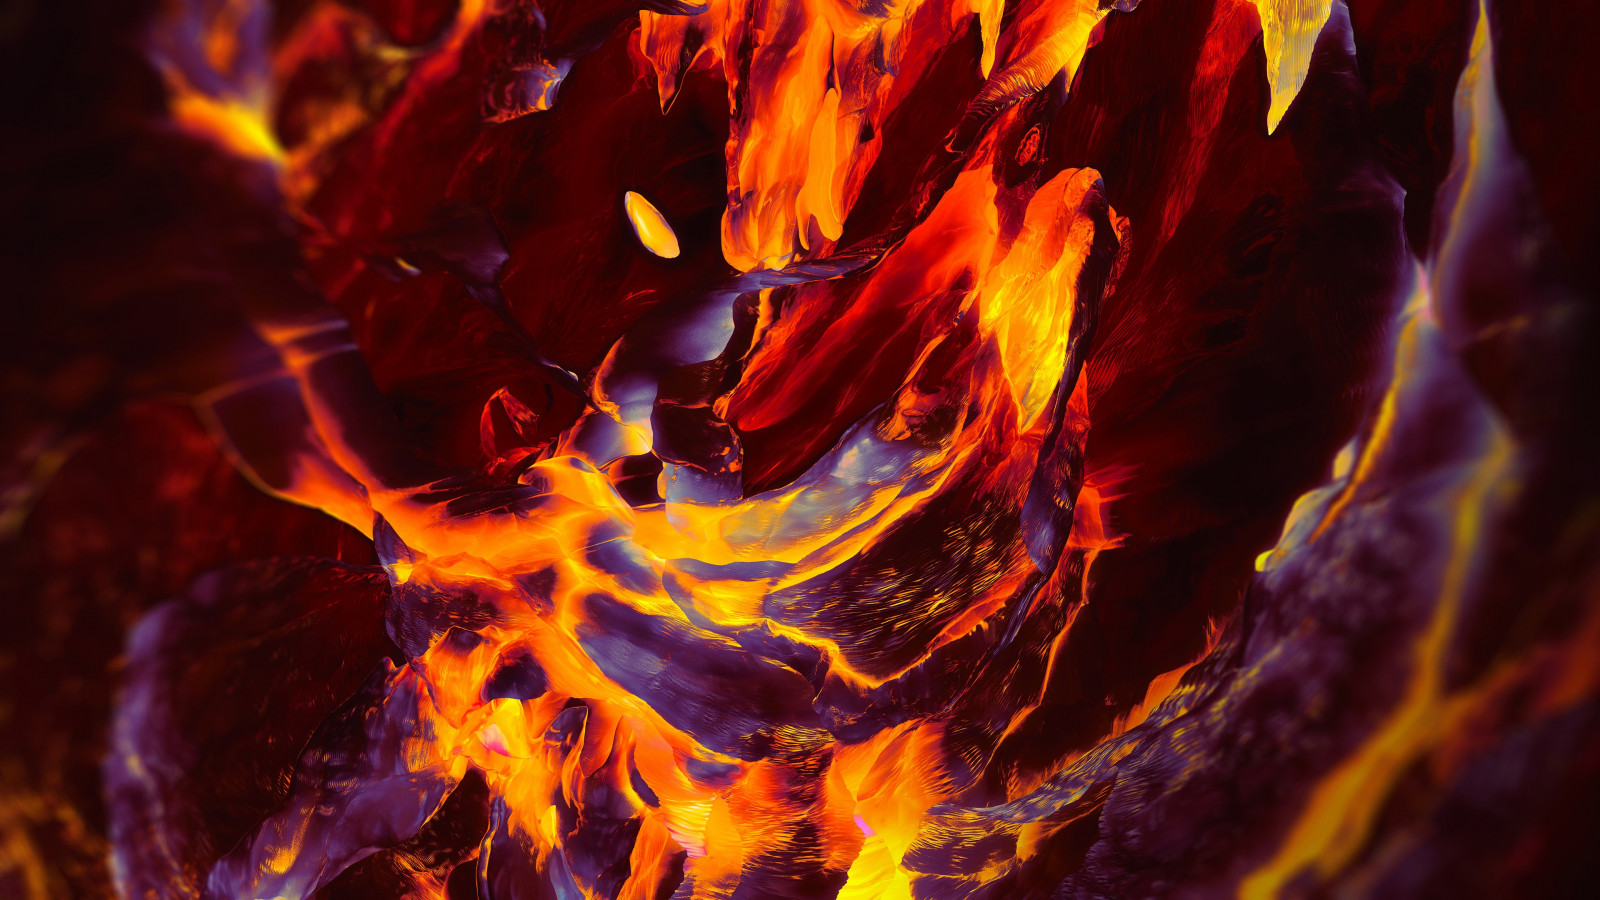 OnePlus Fire wallpaper 1600x900